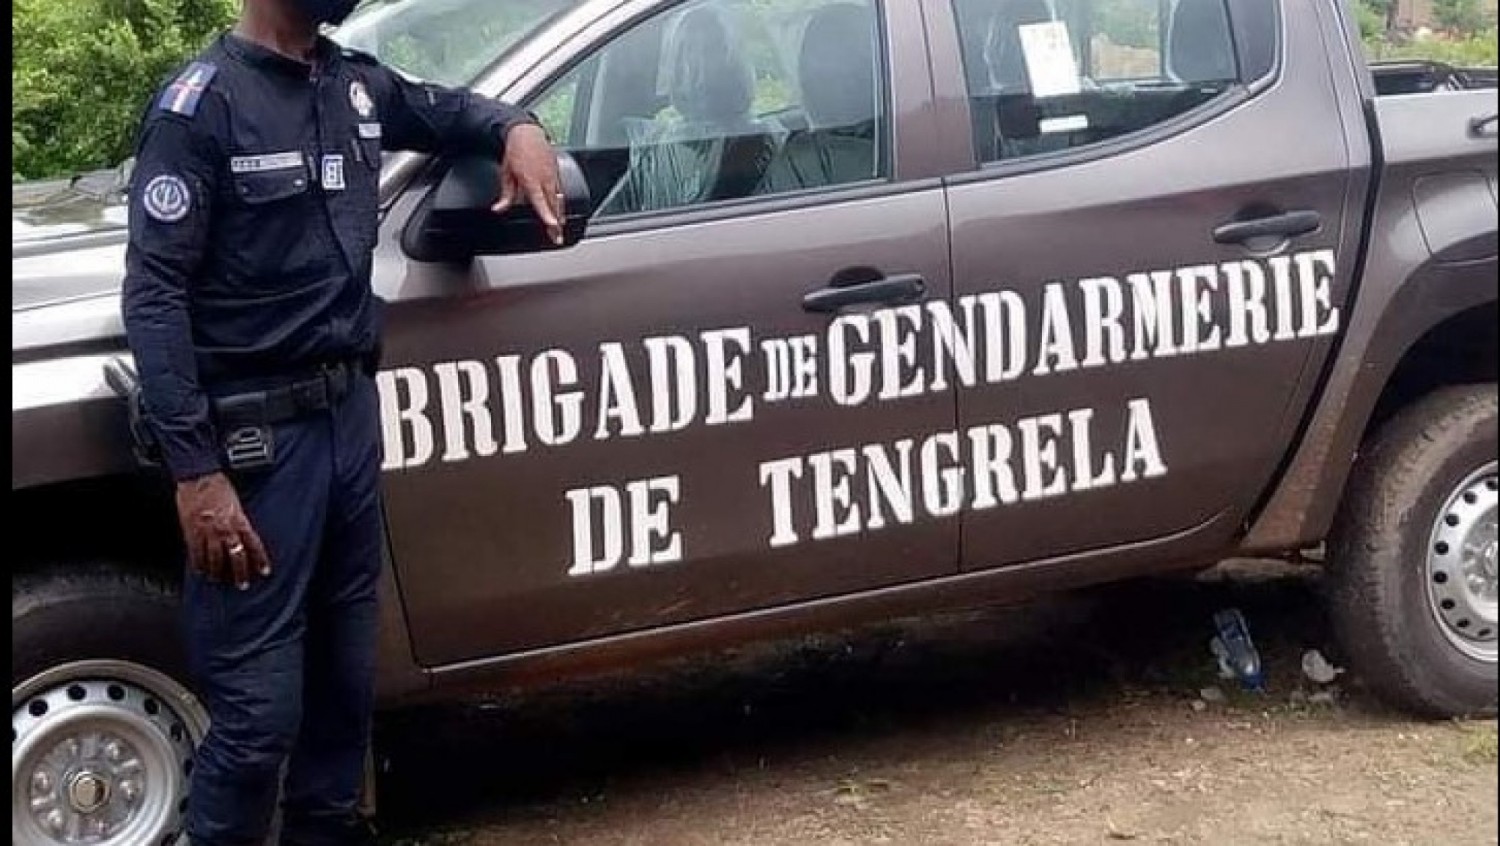 Côte d'Ivoire : Un contingent de la Gendarmerie déployé à Tengrela  pour renforcer la frontière ivoiro-malienne